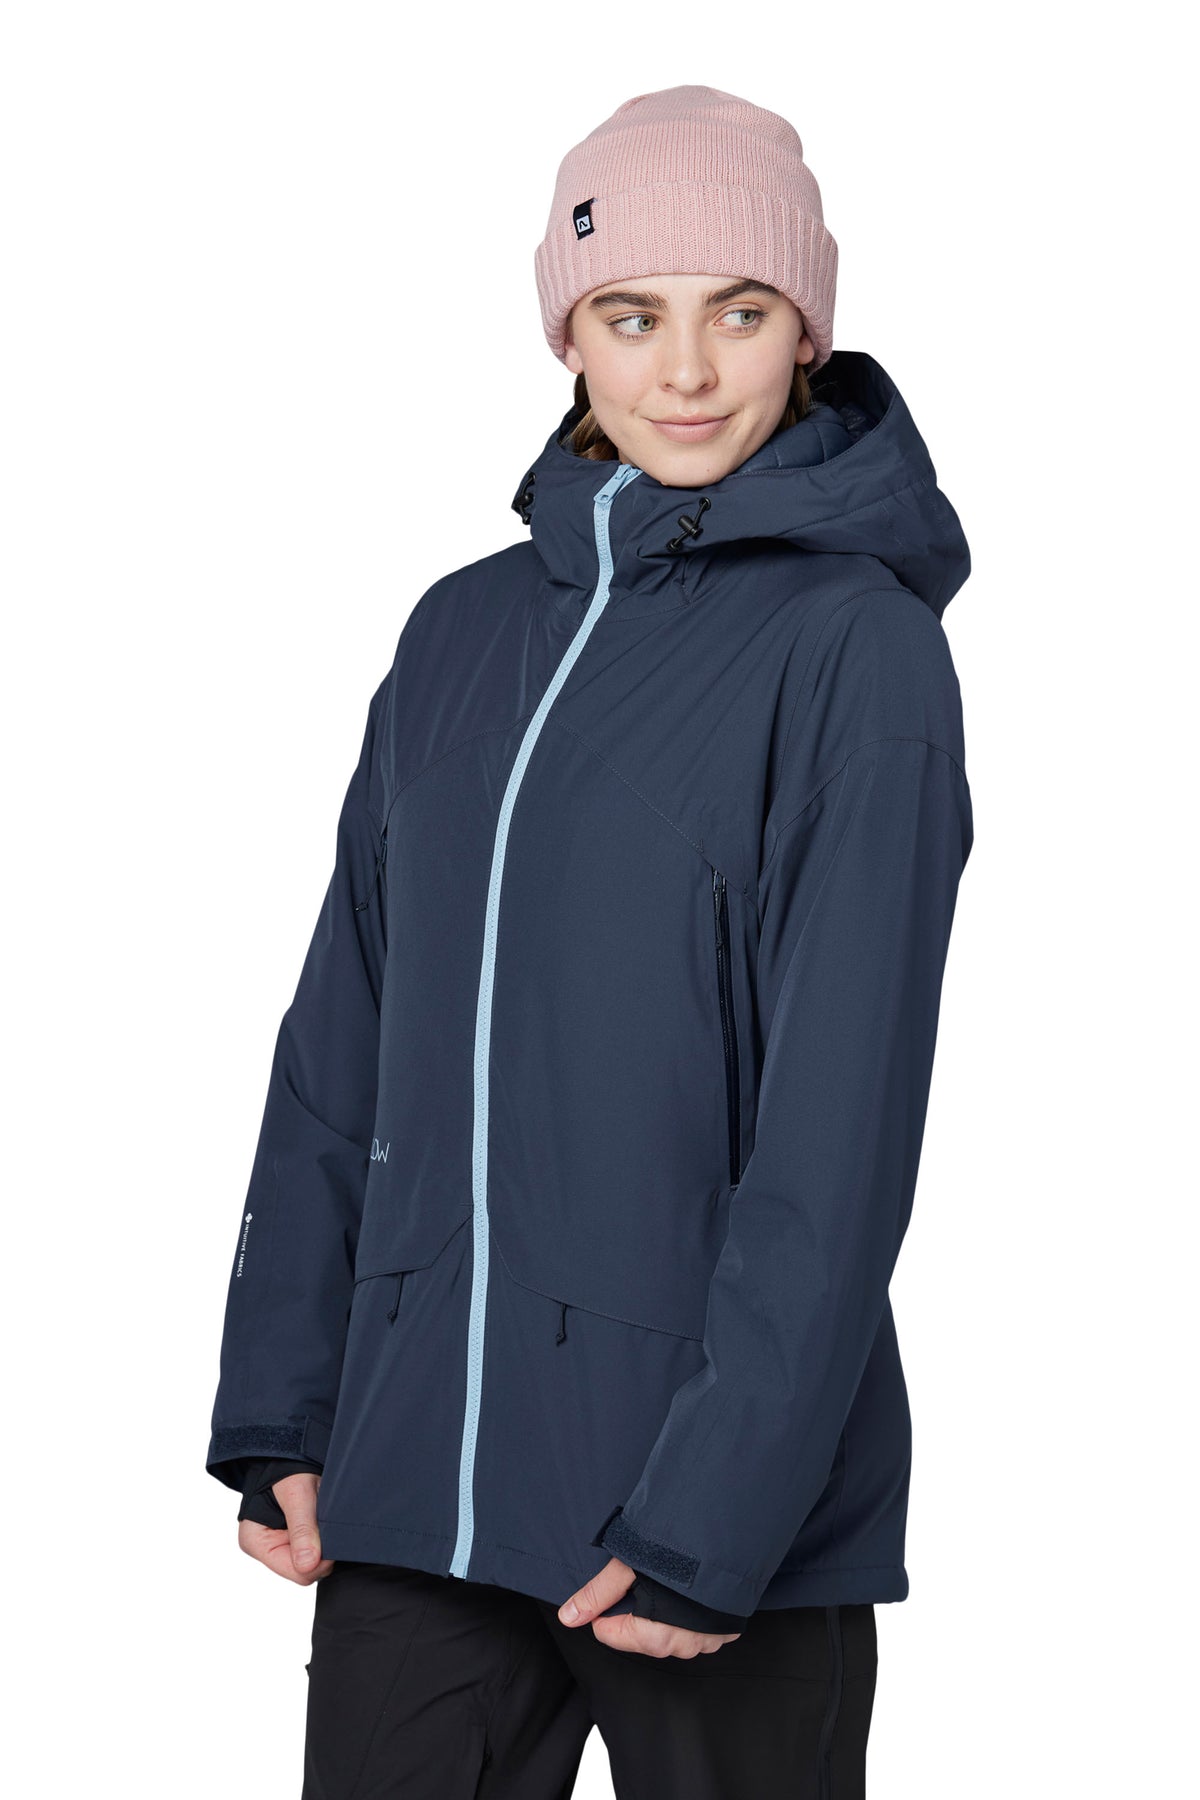 Sarah Jacket - Women's Insulated Ski Jacket | Flylow – Flylow Gear